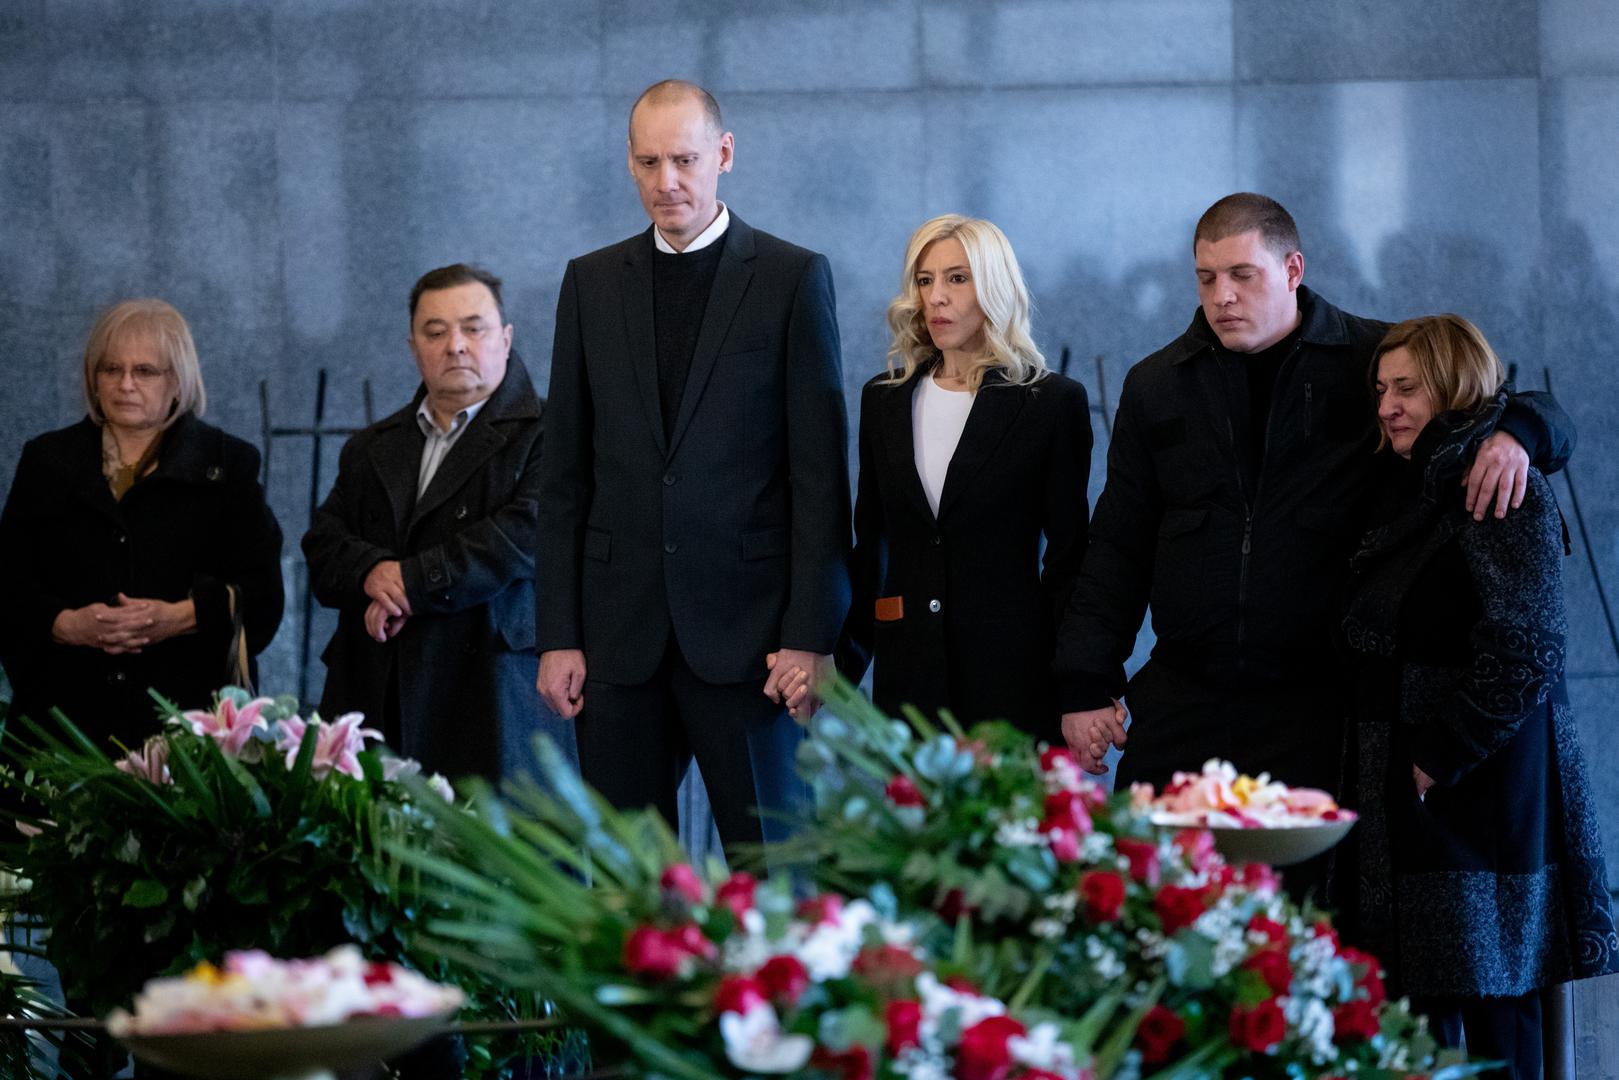 Posljednji ispraćaj Željka Rohatinskog održan je danas u zagrebačkom krematoriju.